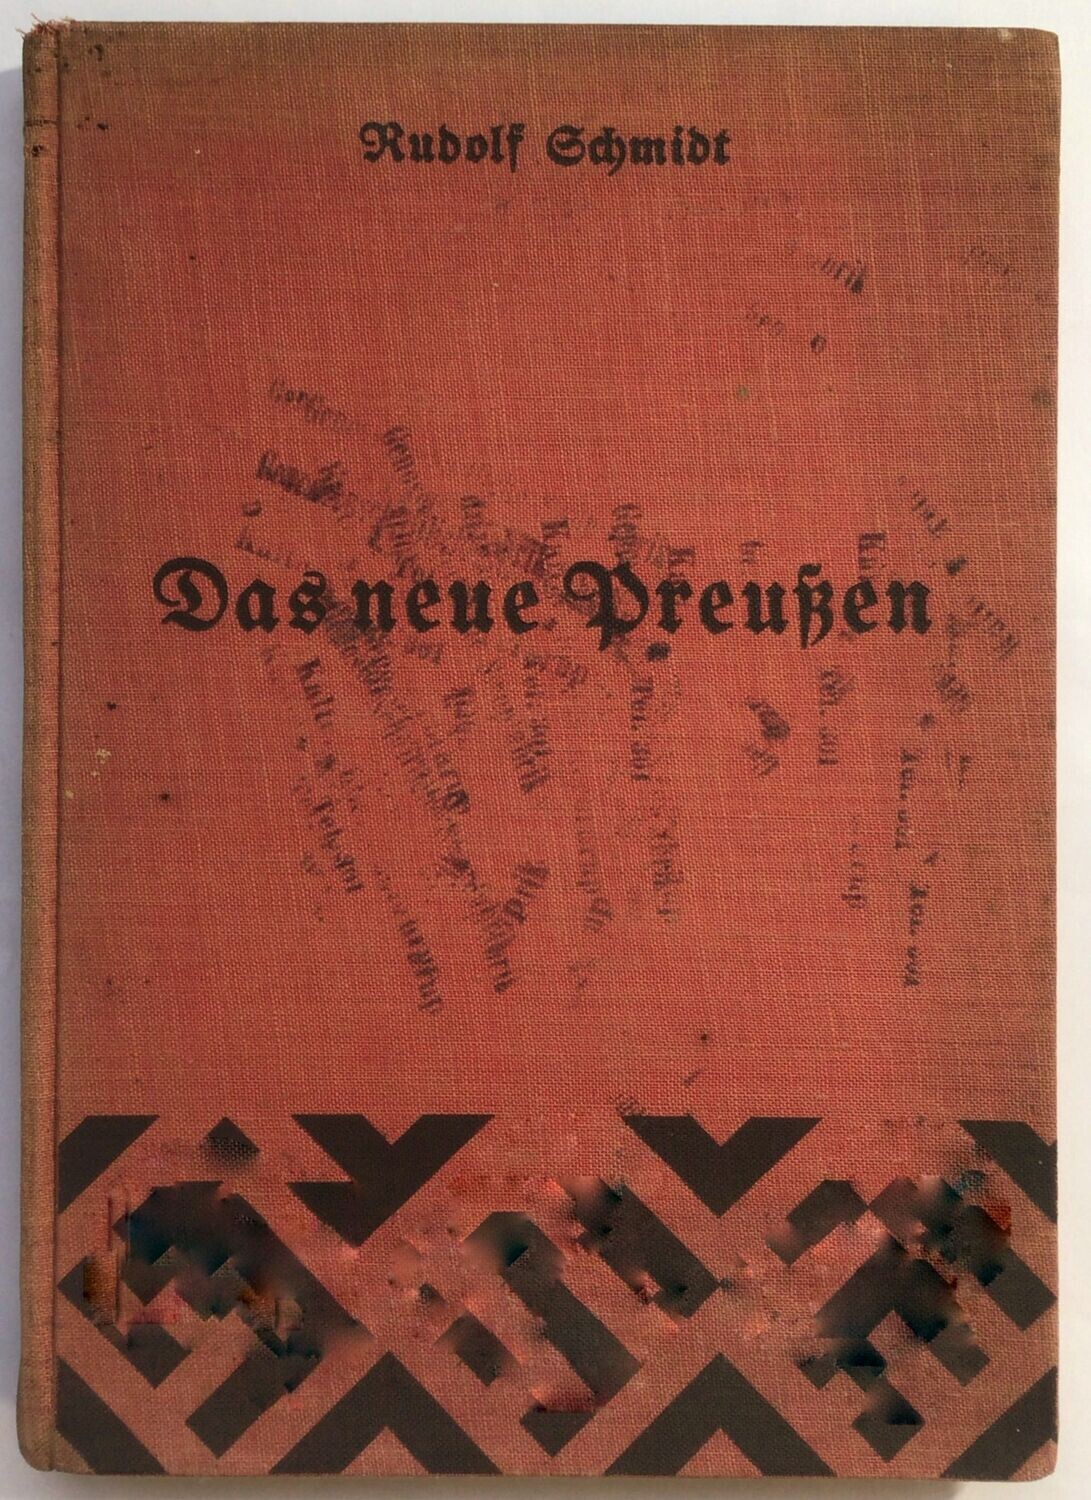 Schmidt: Das neue Preußen - Aus der Reihe "Volk, - Recht - Wirtschaft im Dritten Reich" - Ganzleinenausgabe (Auflage 7. - 10. Tausend) aus dem Jahr 1933.